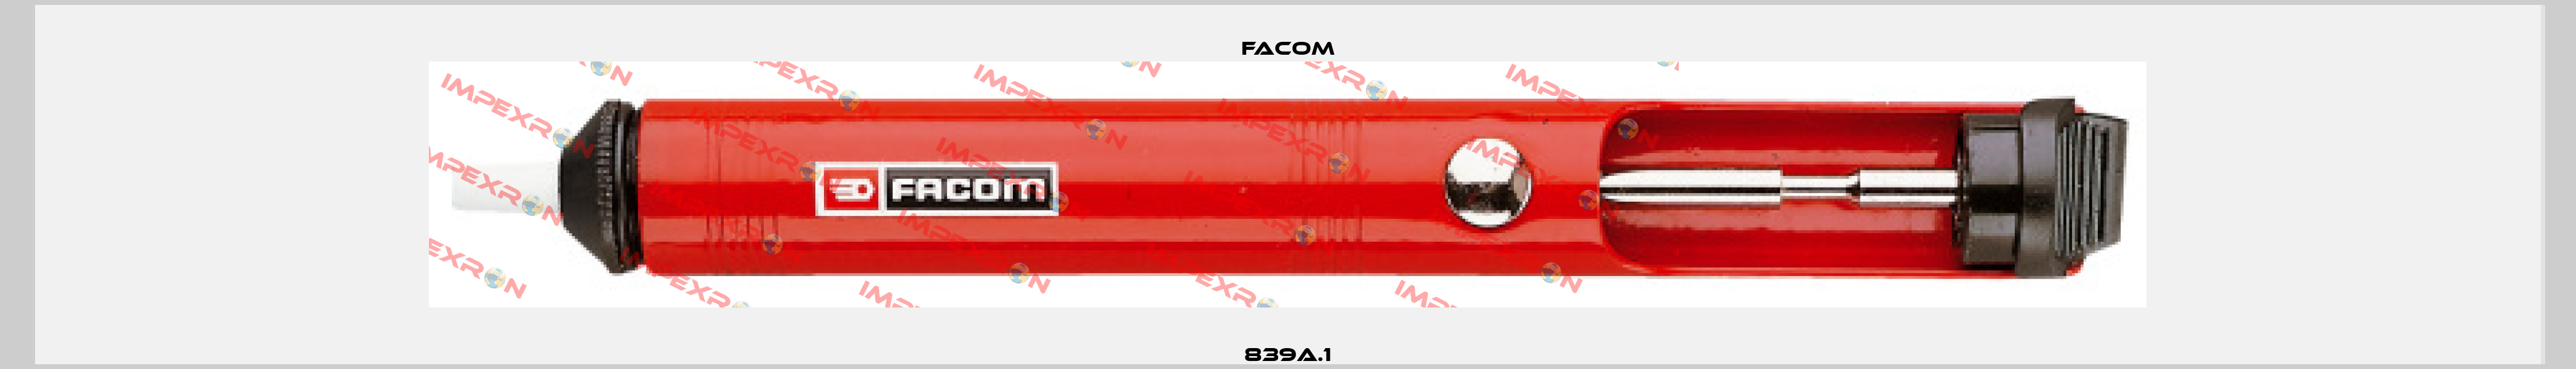 839A.1 Facom